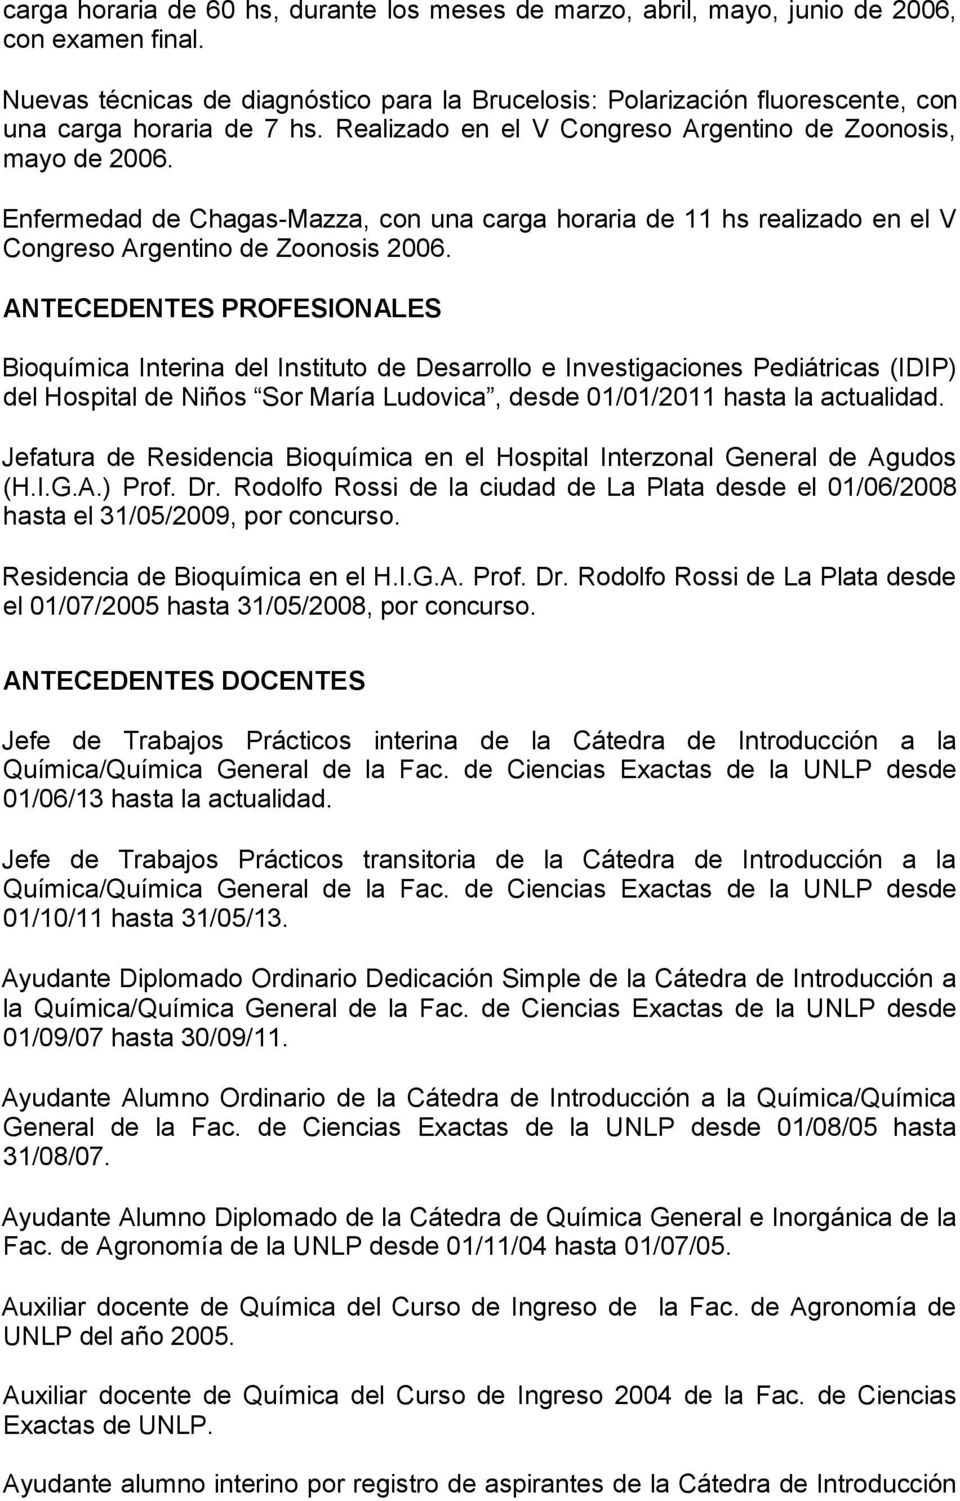 Enfermedad de Chagas-Mazza, con una carga horaria de 11 hs realizado en el V Congreso Argentino de Zoonosis 2006.